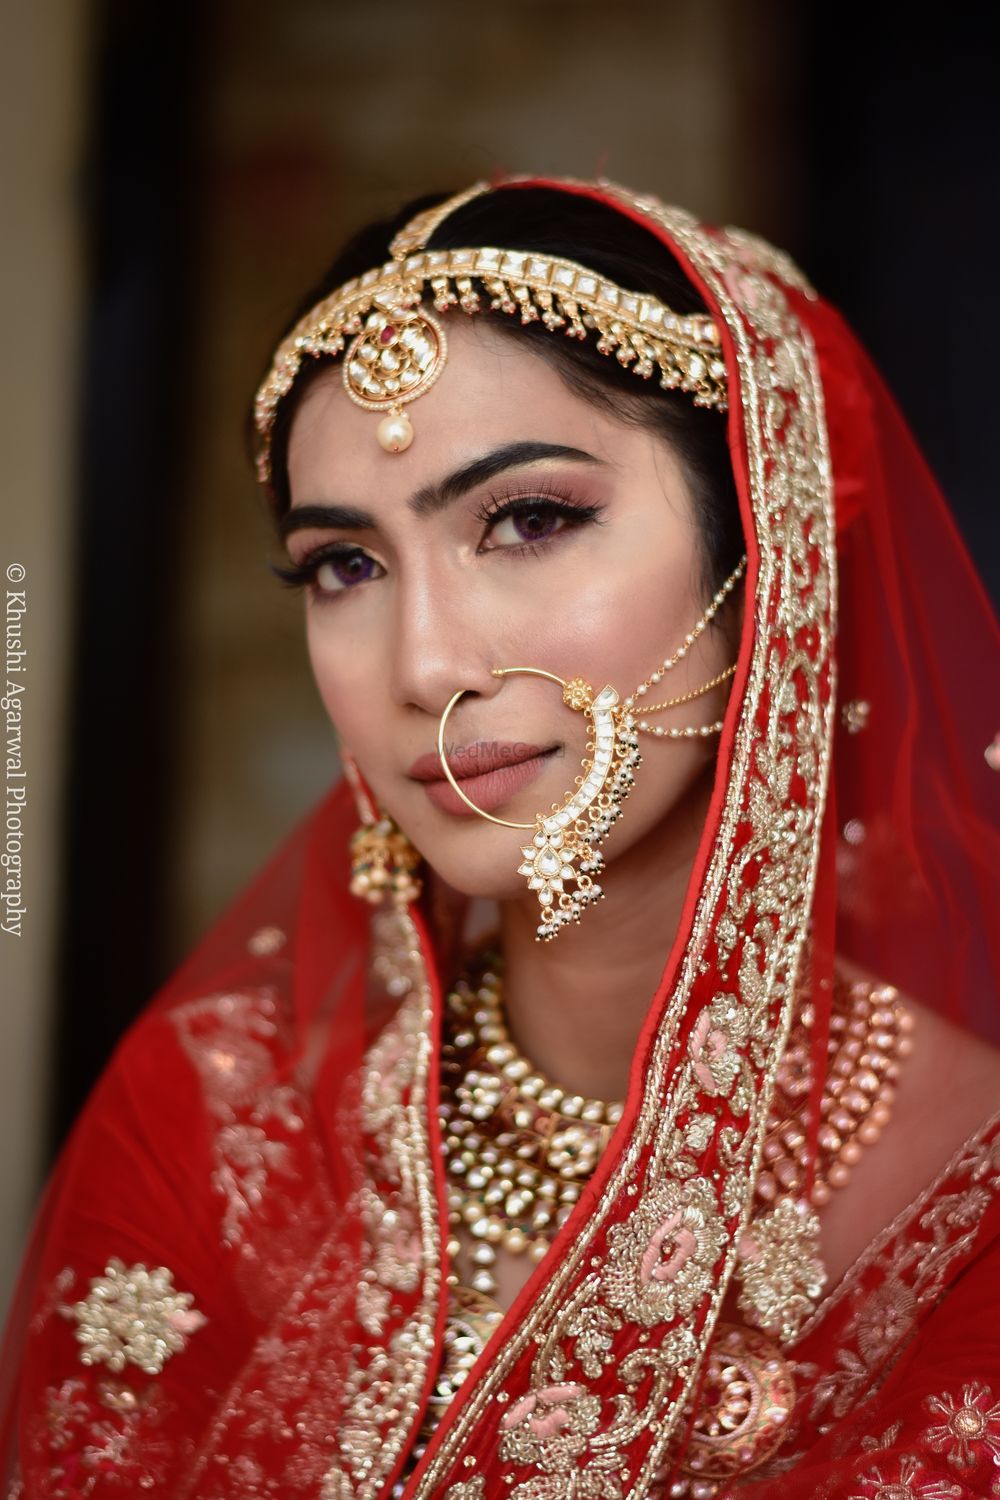 Photo By Ashi Tandon Makeovers - Bridal Makeup